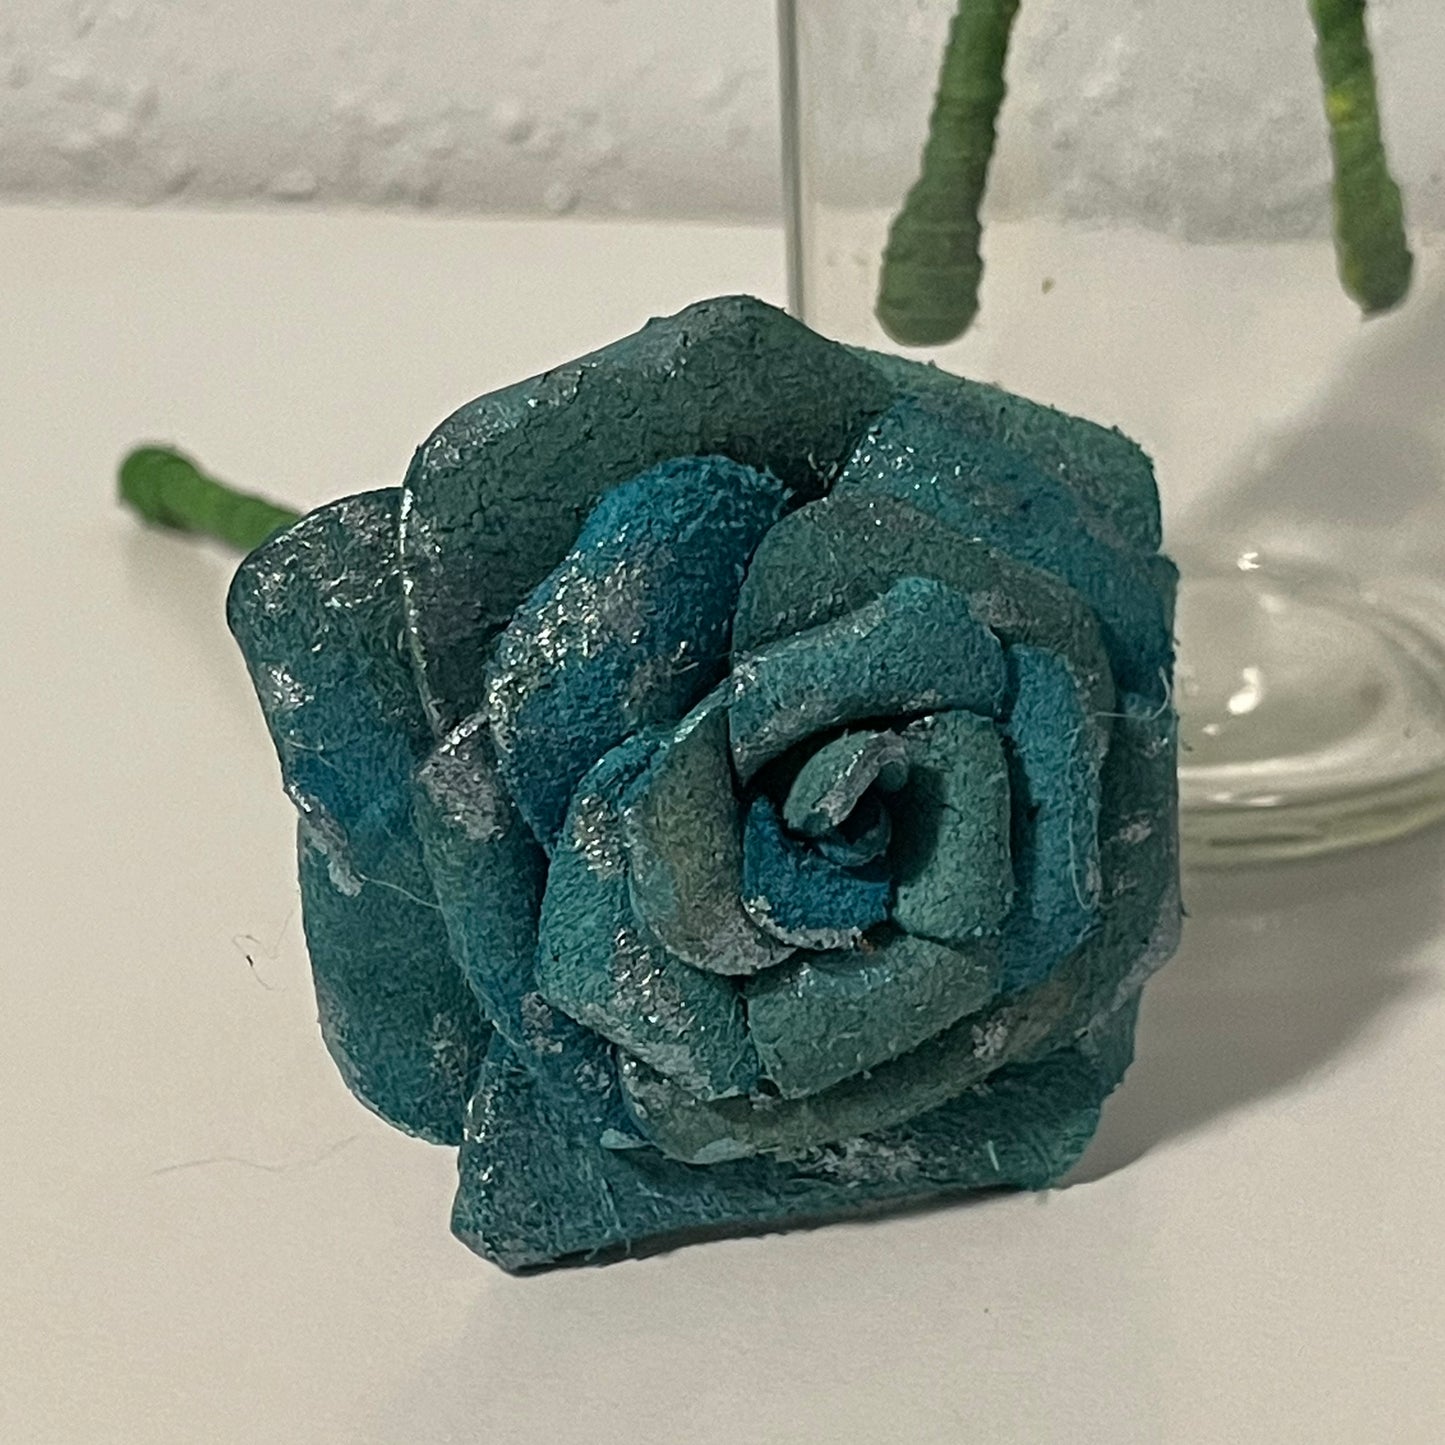 Mini 6” Leather Rose